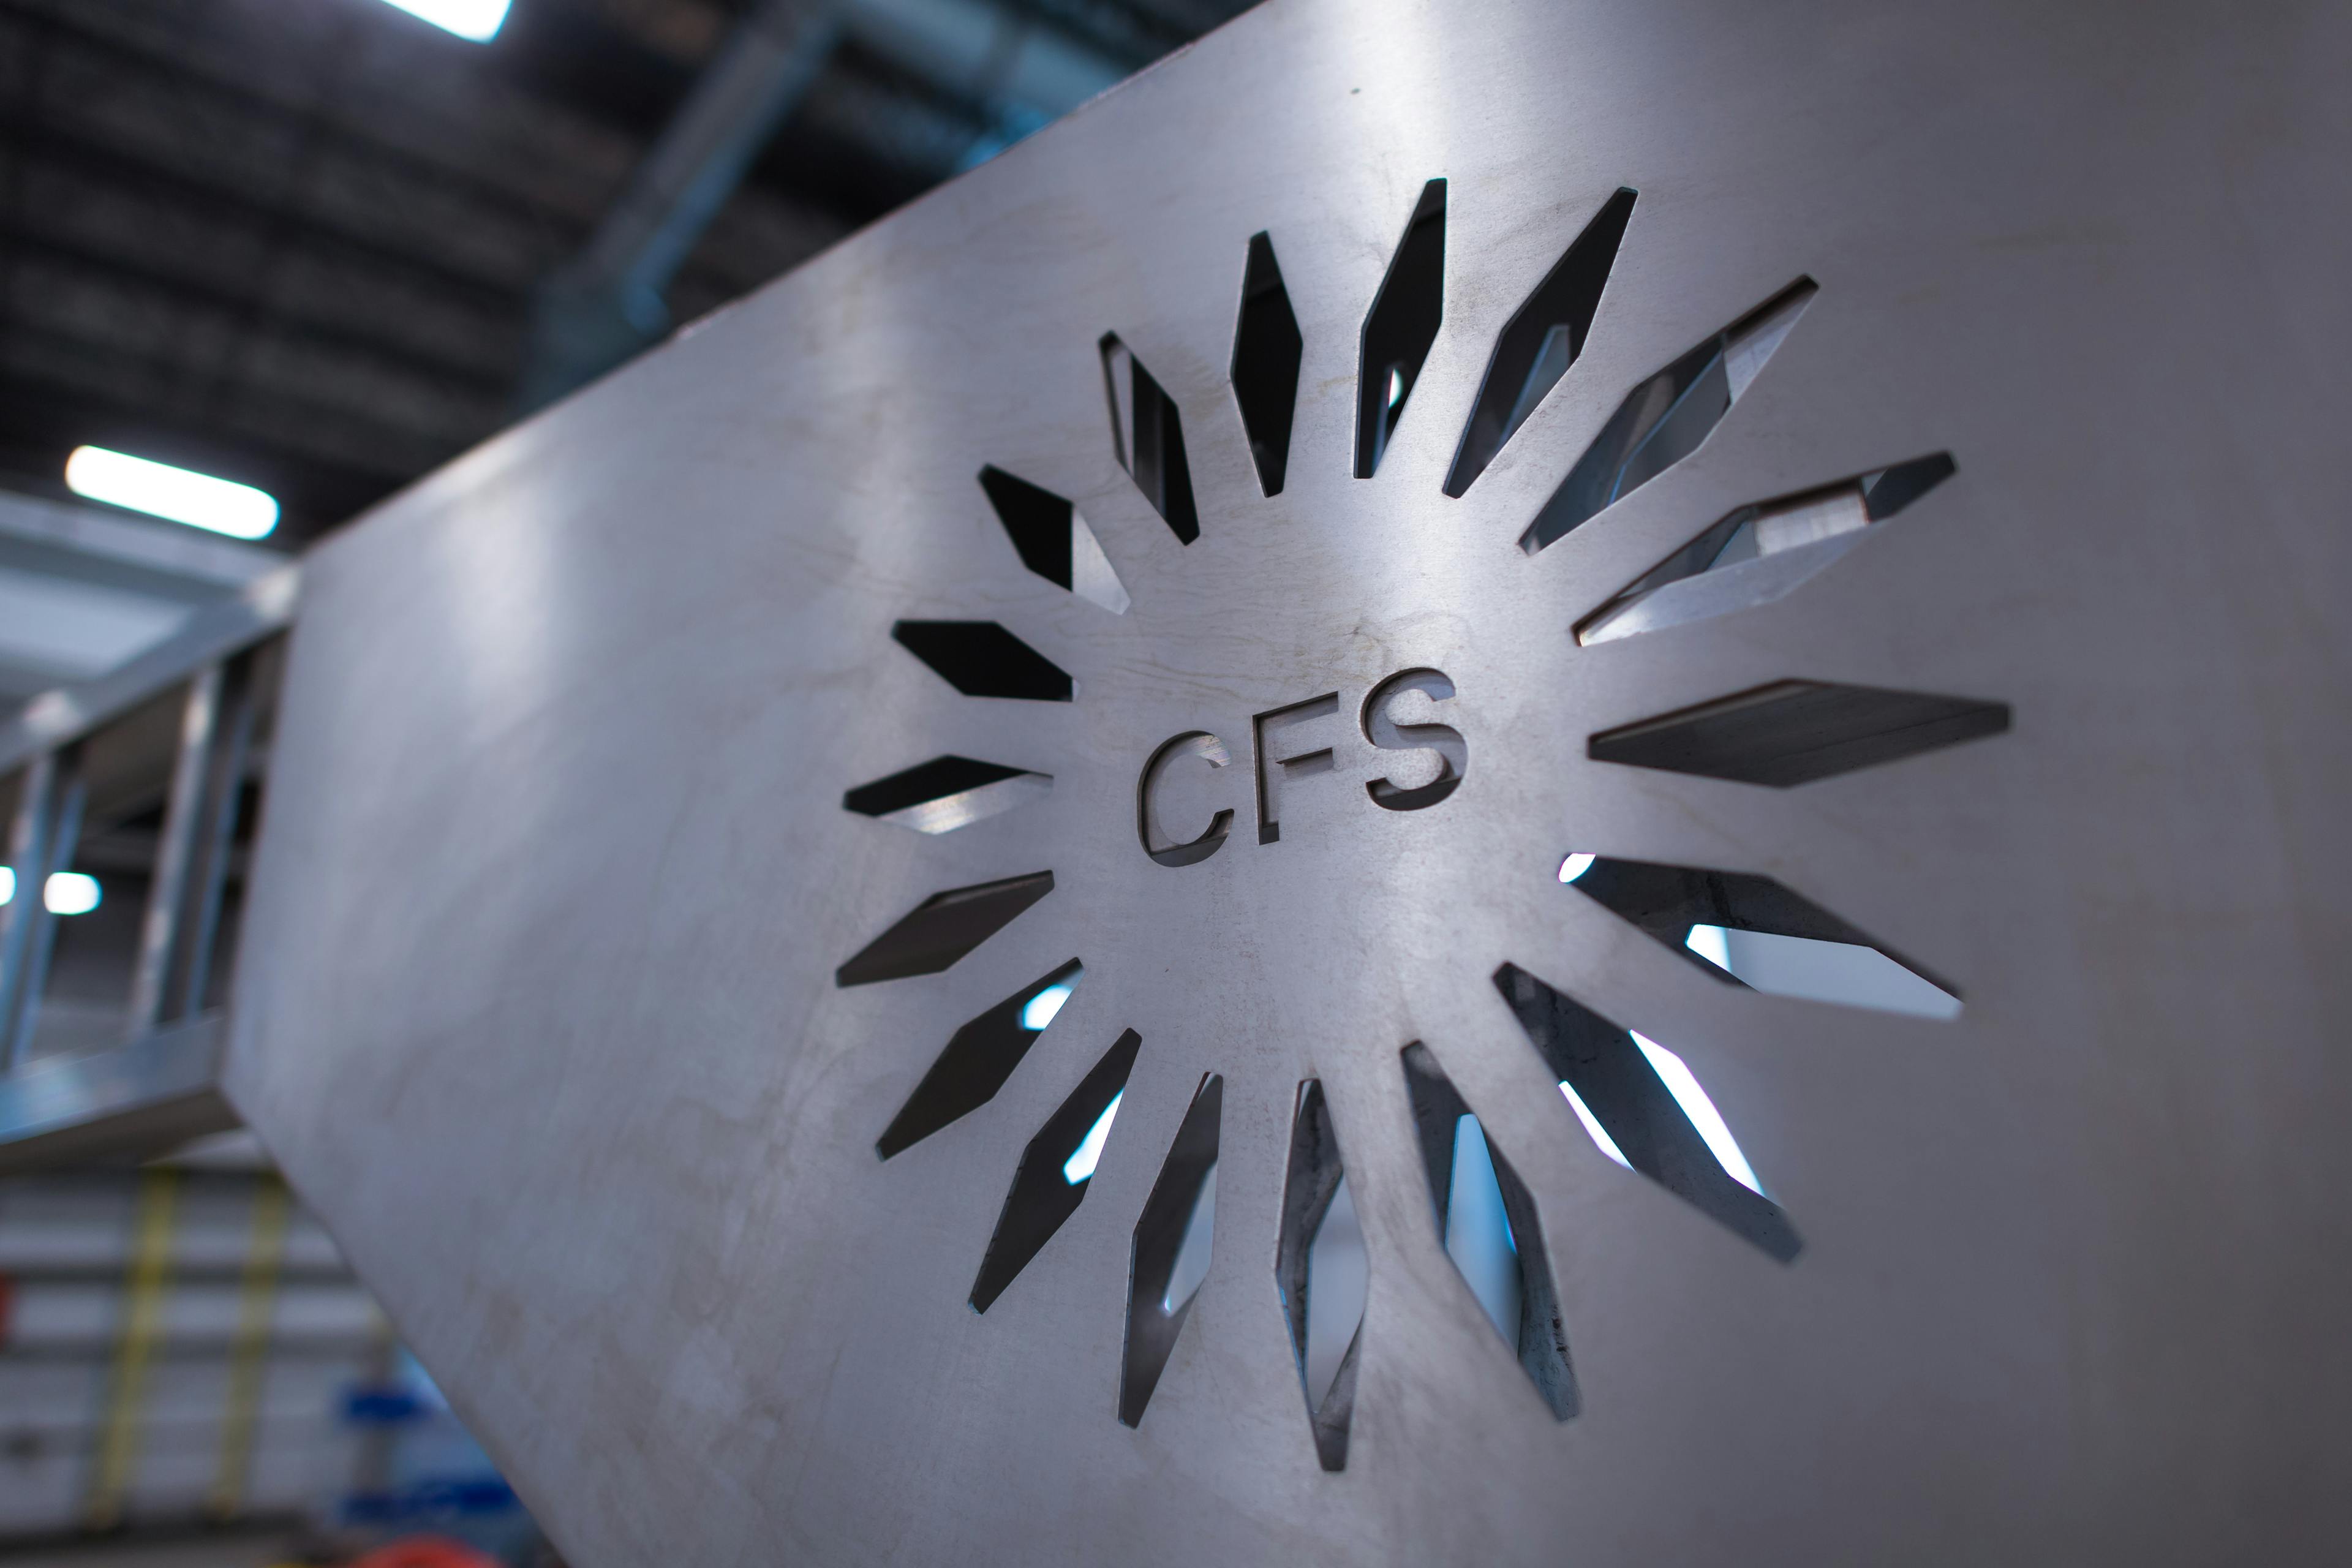 CFS engraved in metal 